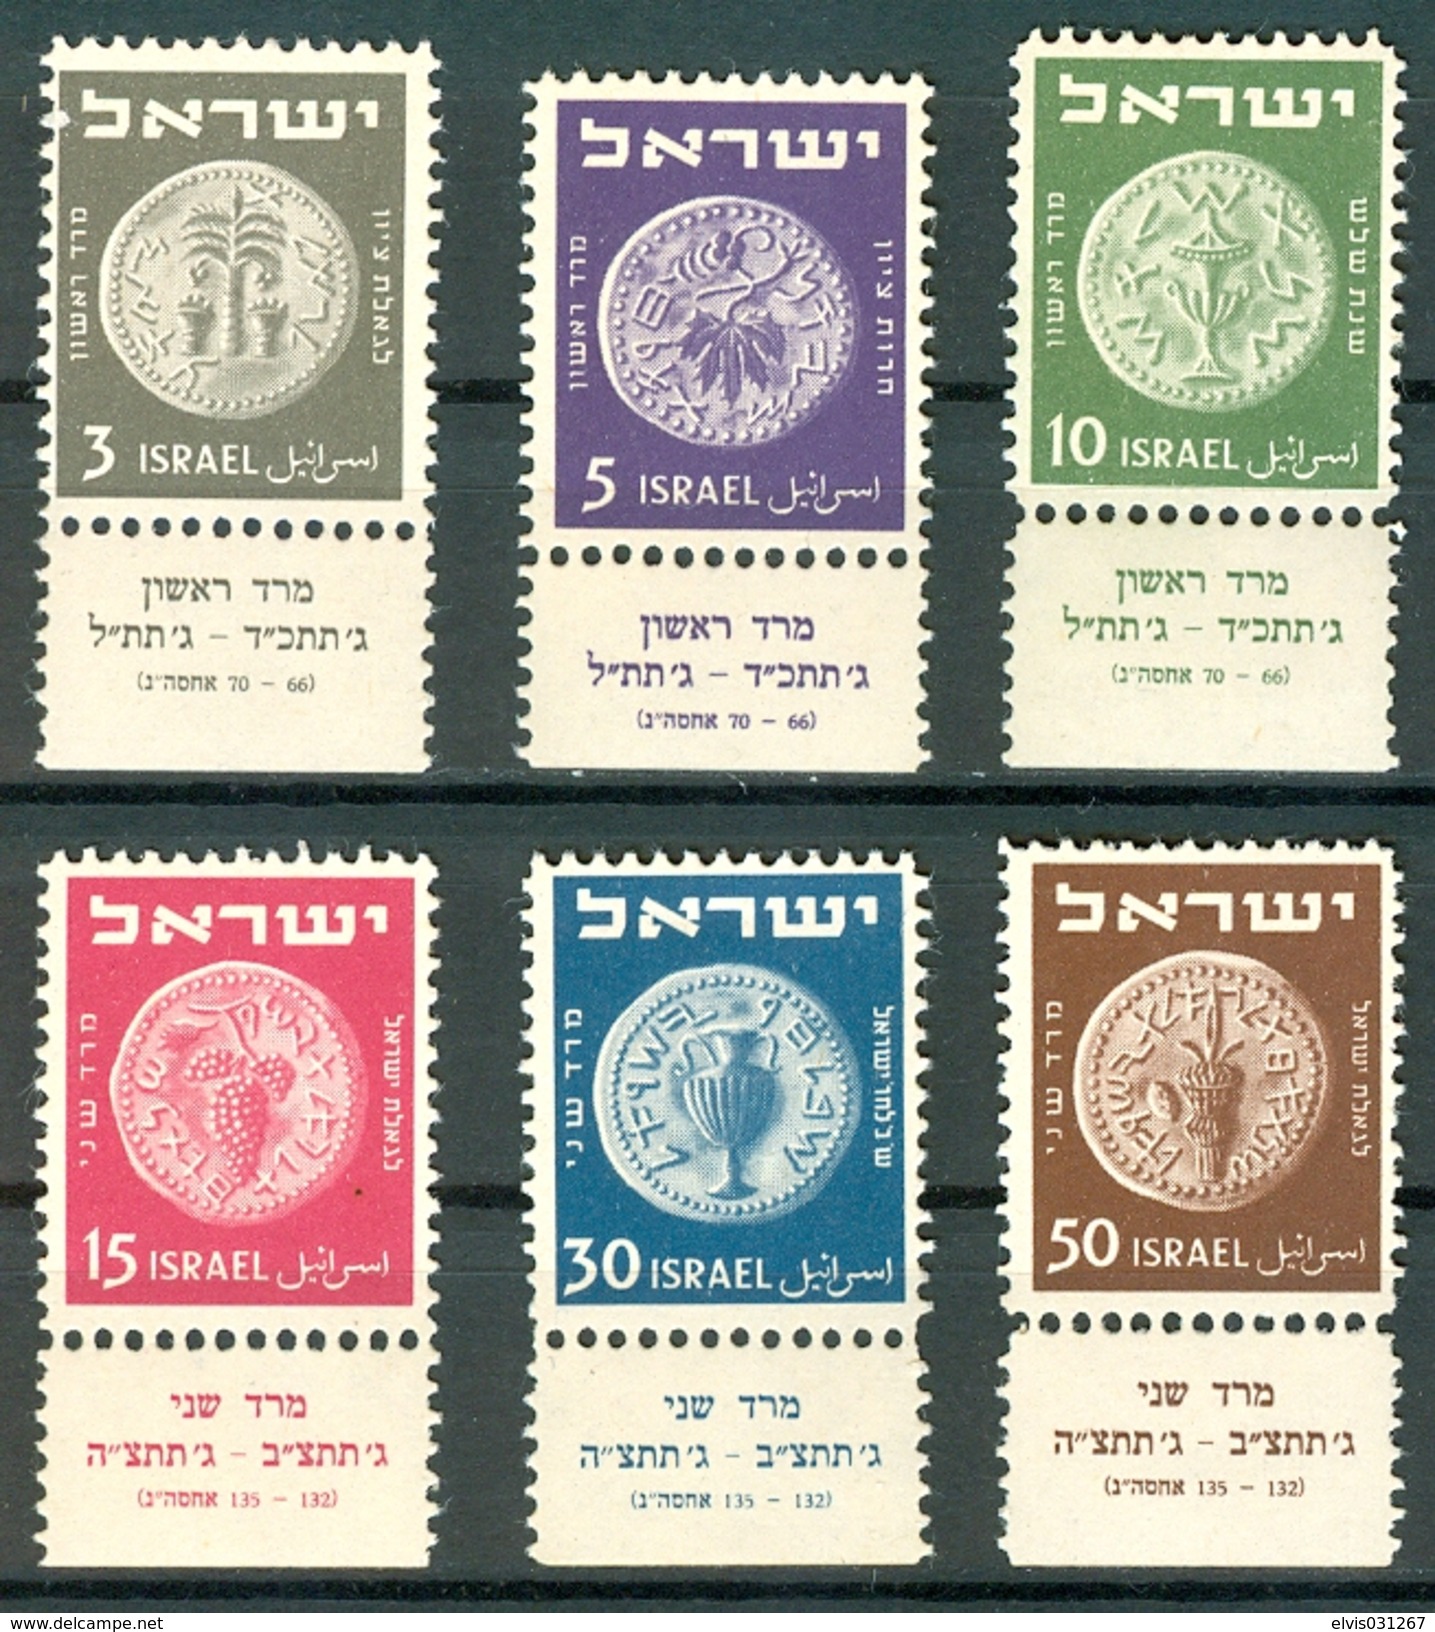 Israel - 1950, Michel/Philex No. : 22-27, - MNH - Full Tab - See Scan - Ongebruikt (met Tabs)